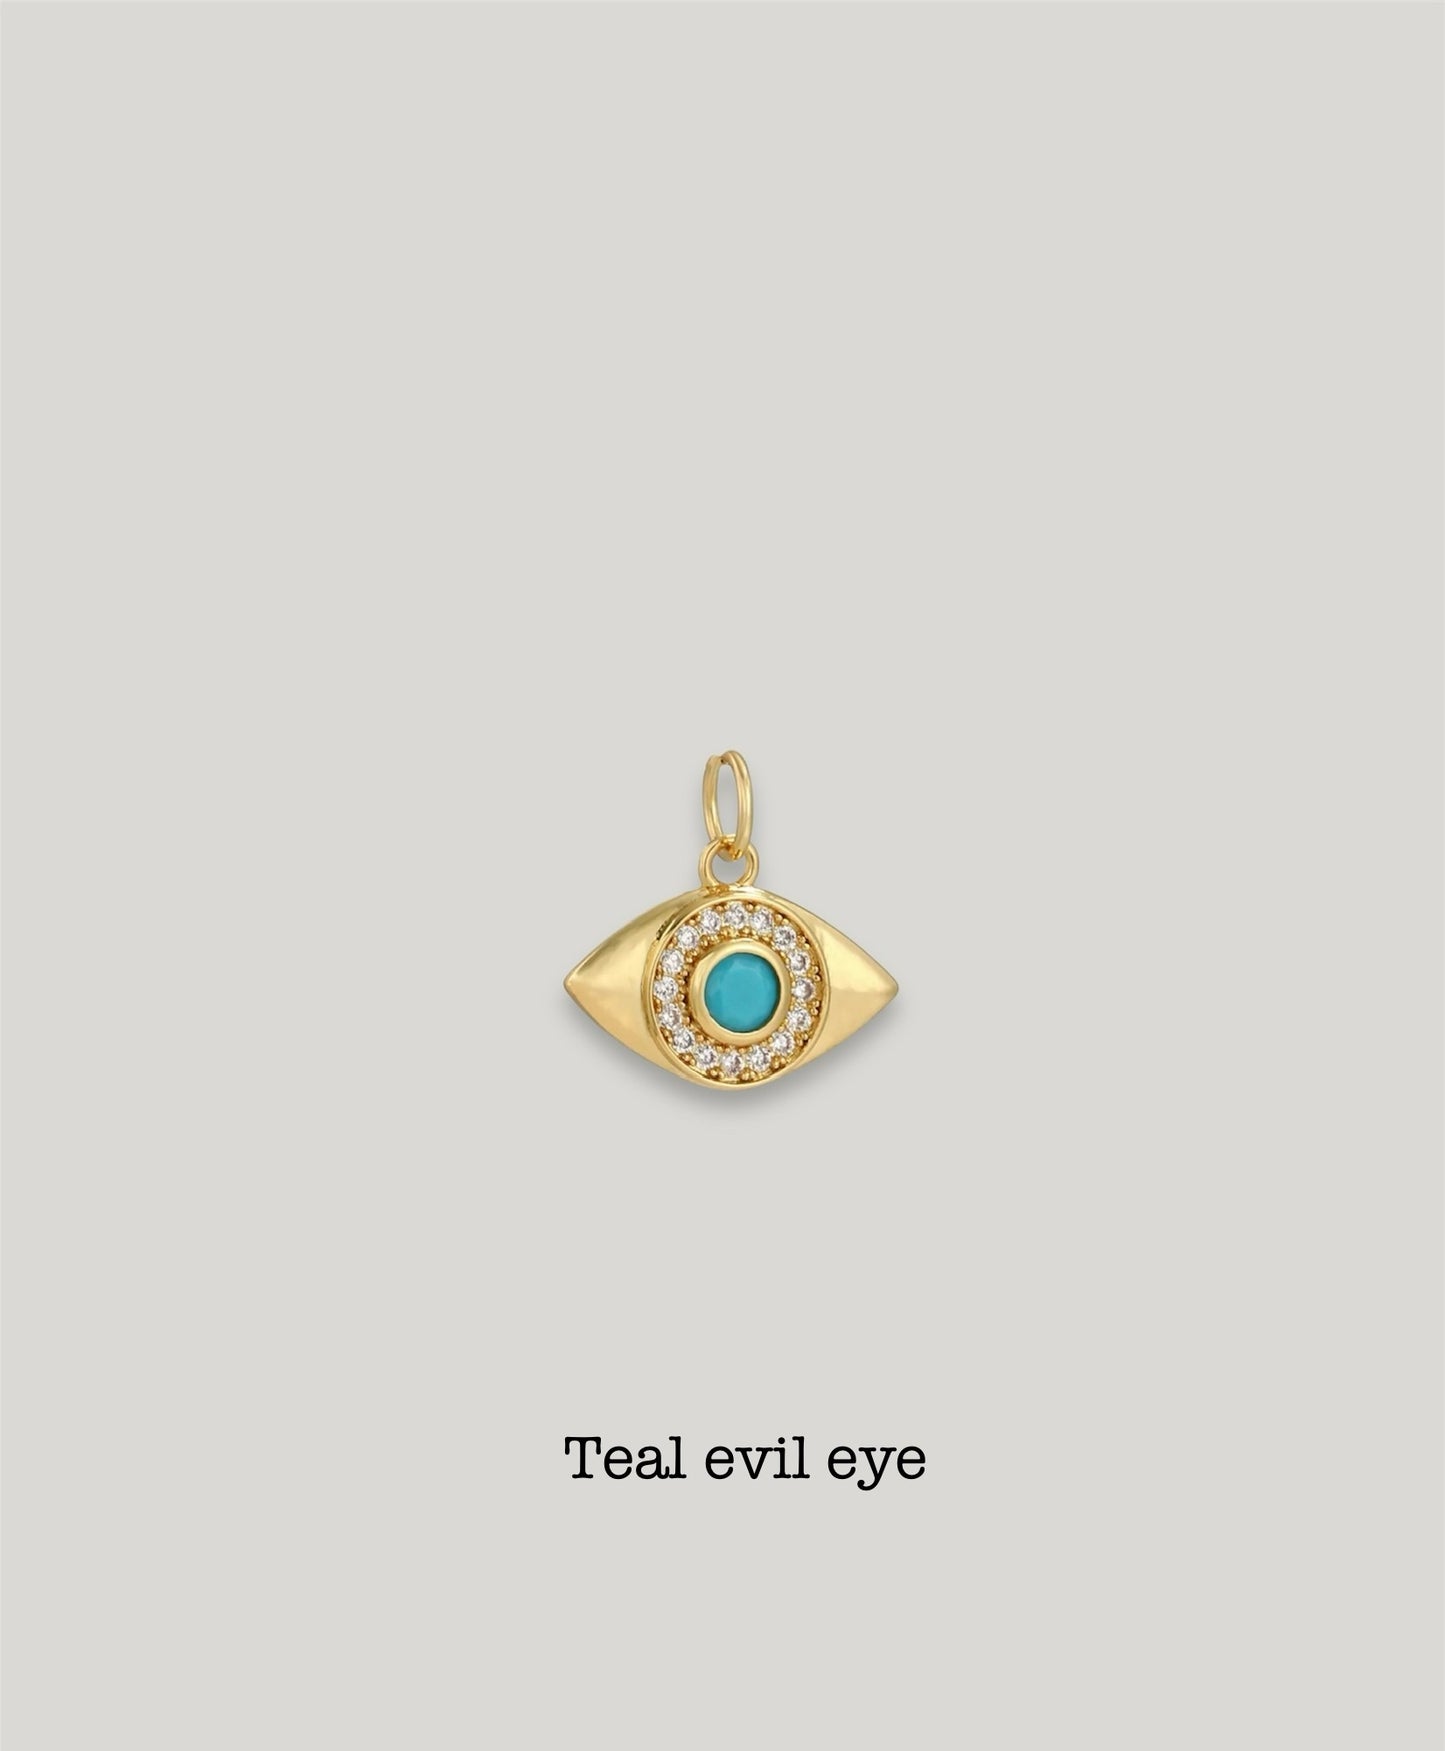 Evil eye charms